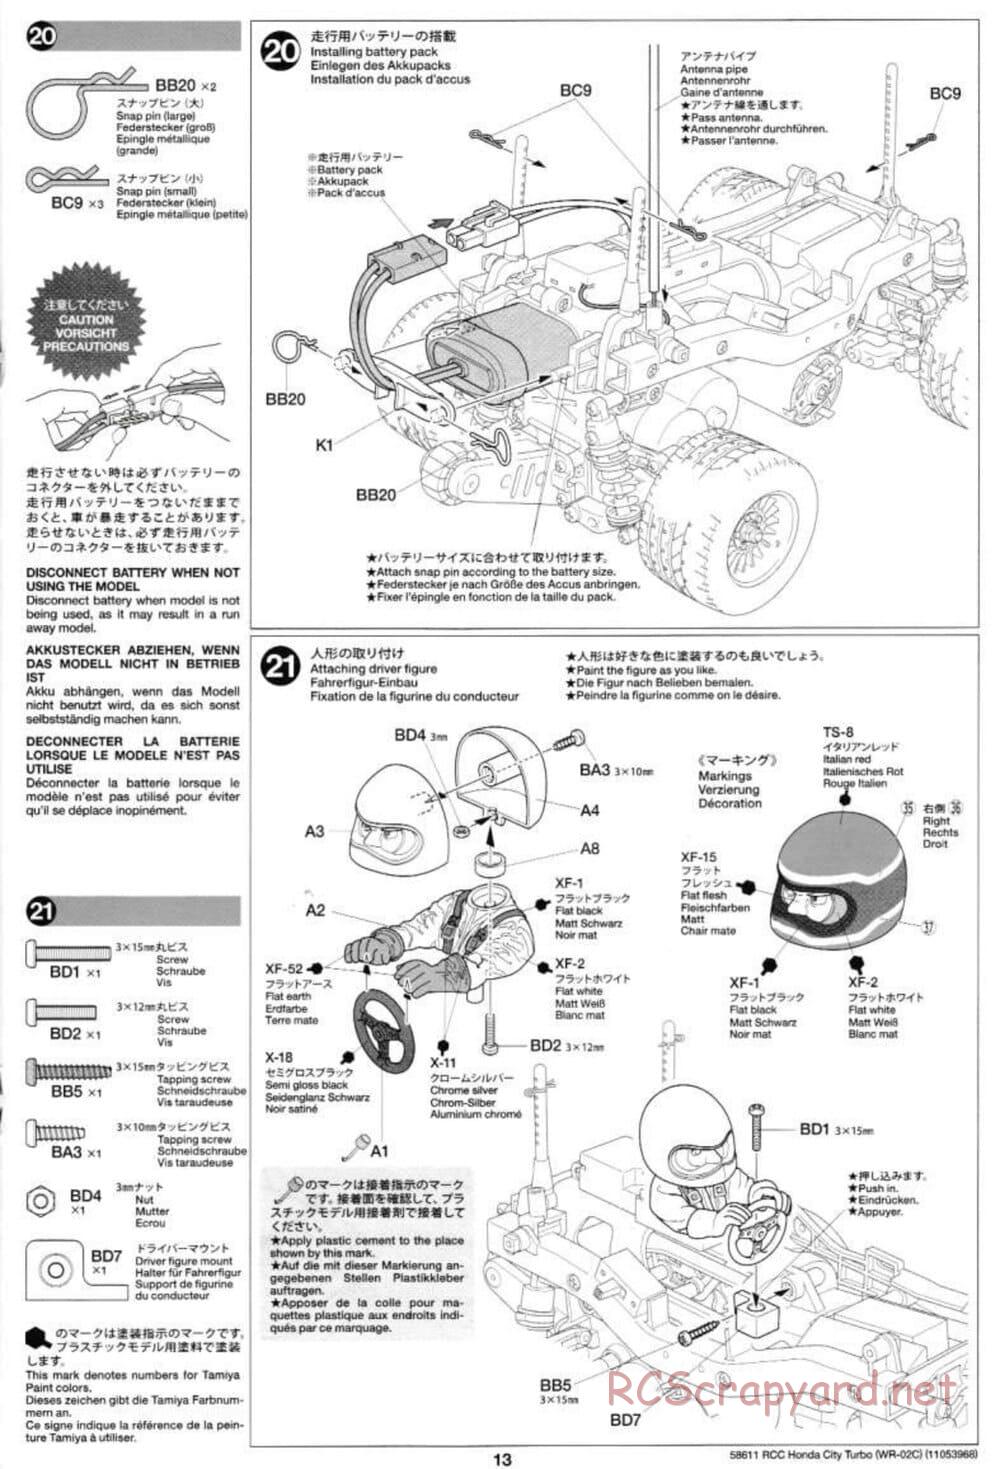 Tamiya - Honda City Turbo - WR-02C Chassis - Manual - Page 13